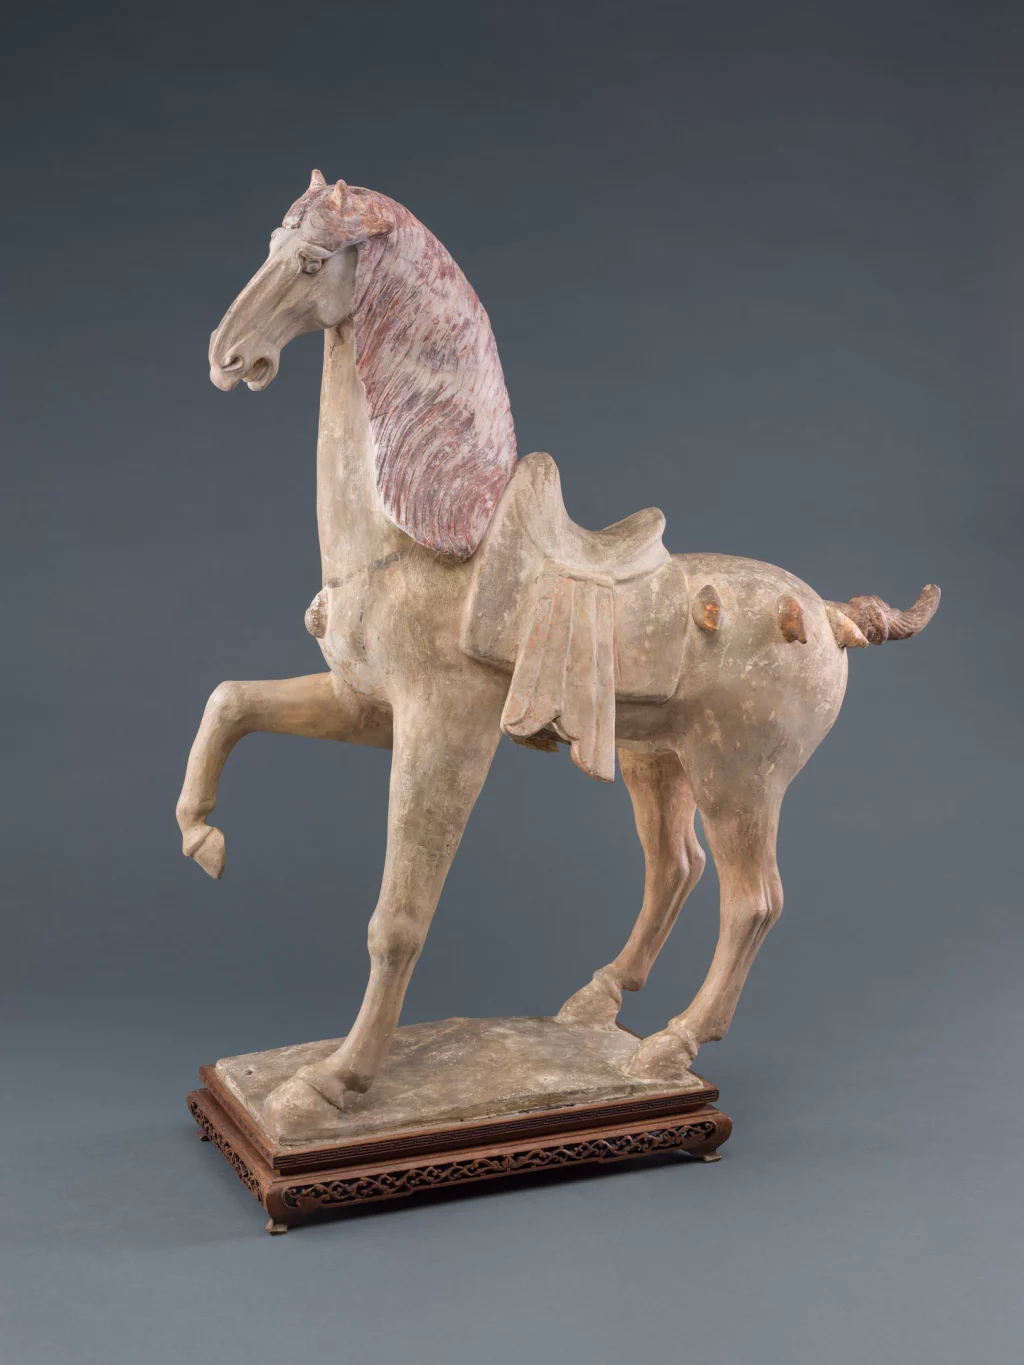 Seni bertemu sains dalam analisis patung kuda penari kuno